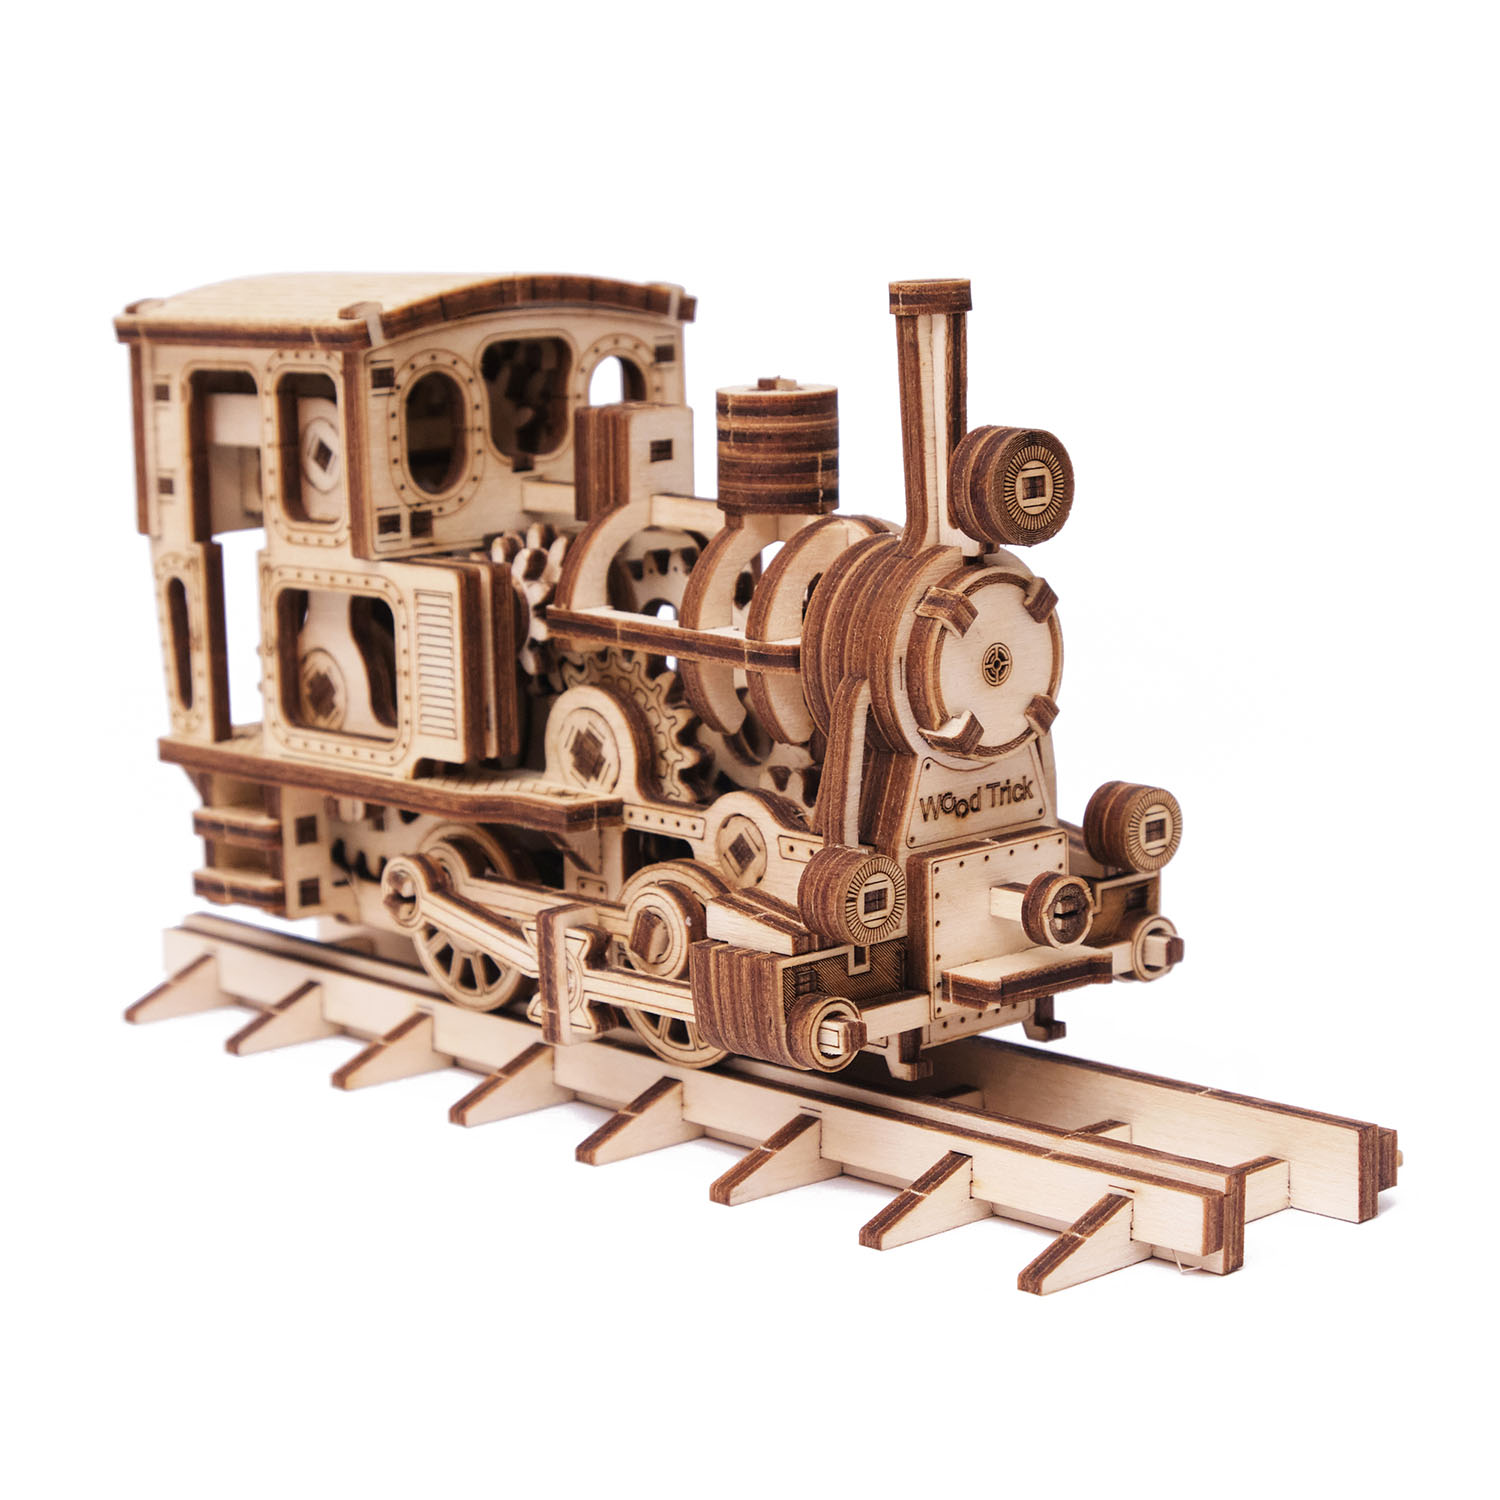 wood/product/Chug-Chug Train1-8